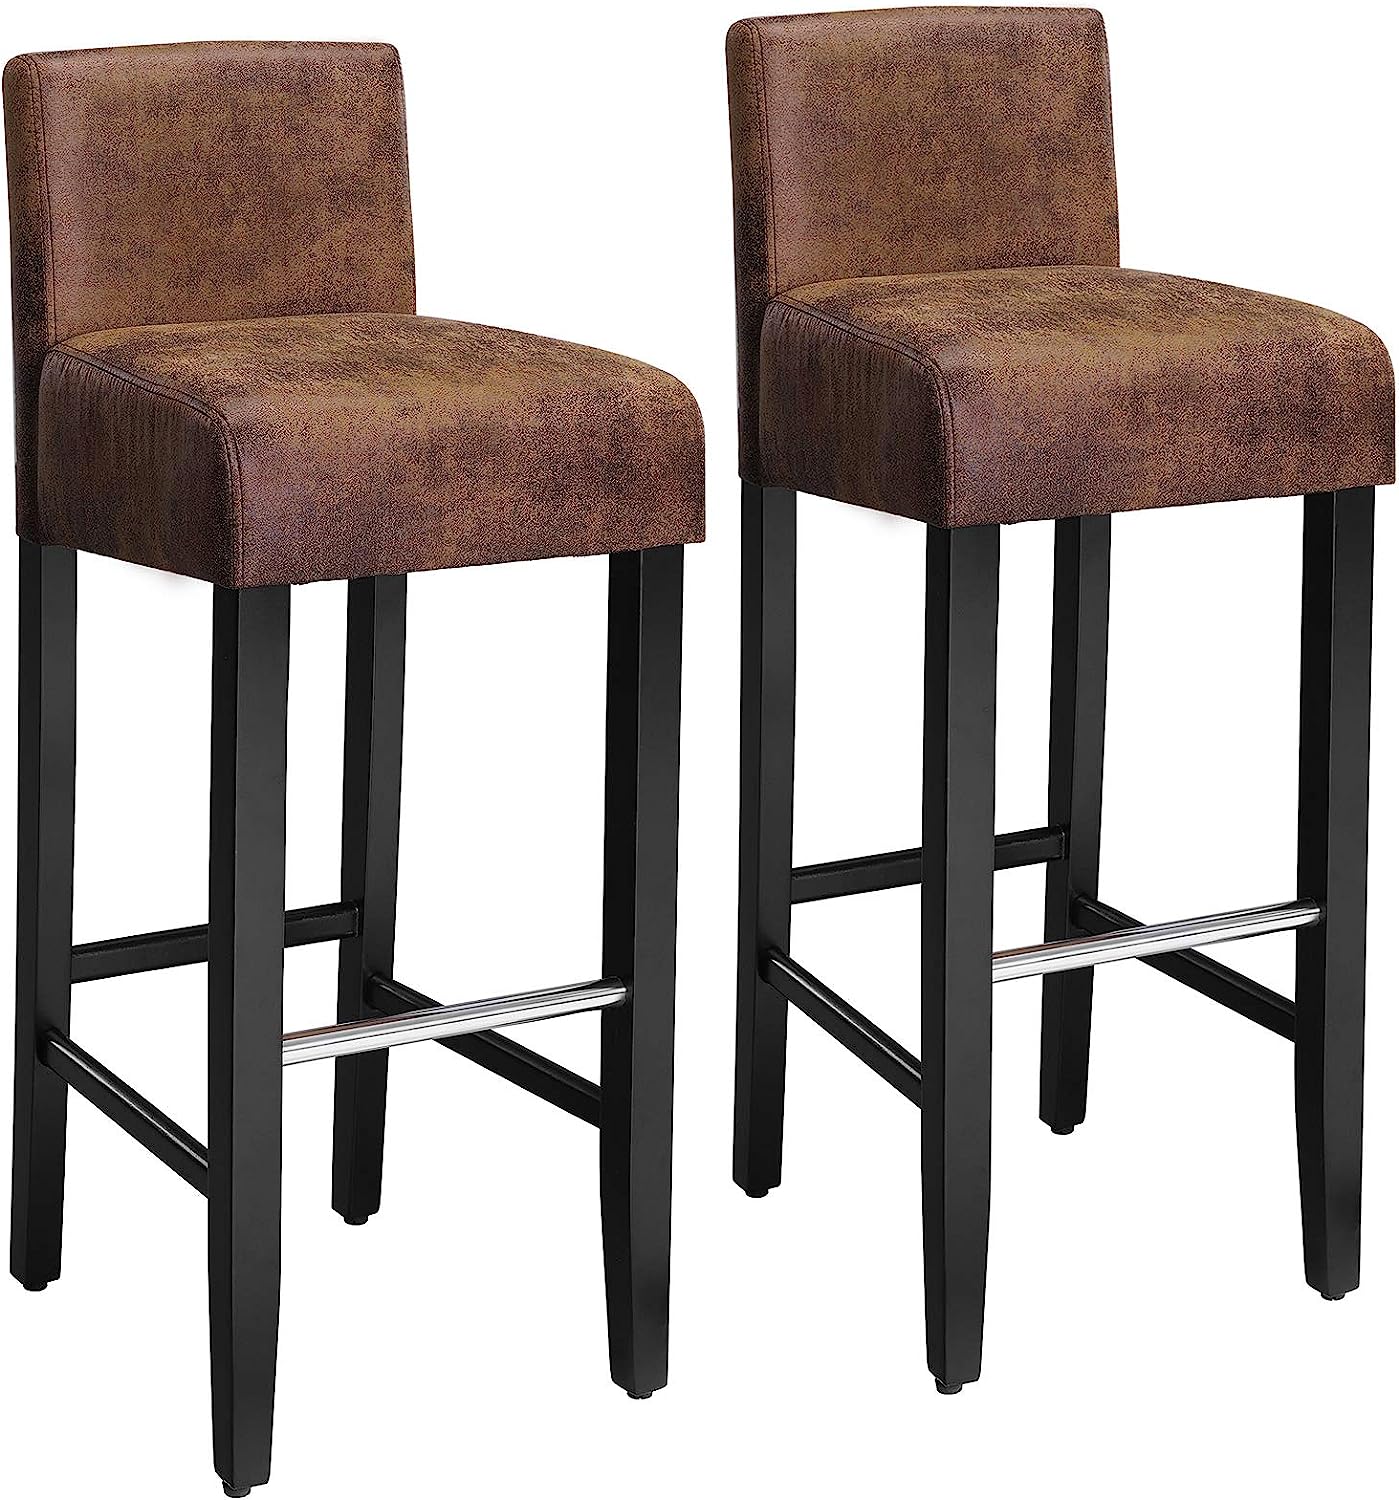 Quelles sont les chaises de bar les mieux adaptées pour une utilisation commerciale, comme dans les restaurants ou les bars ?缩略图